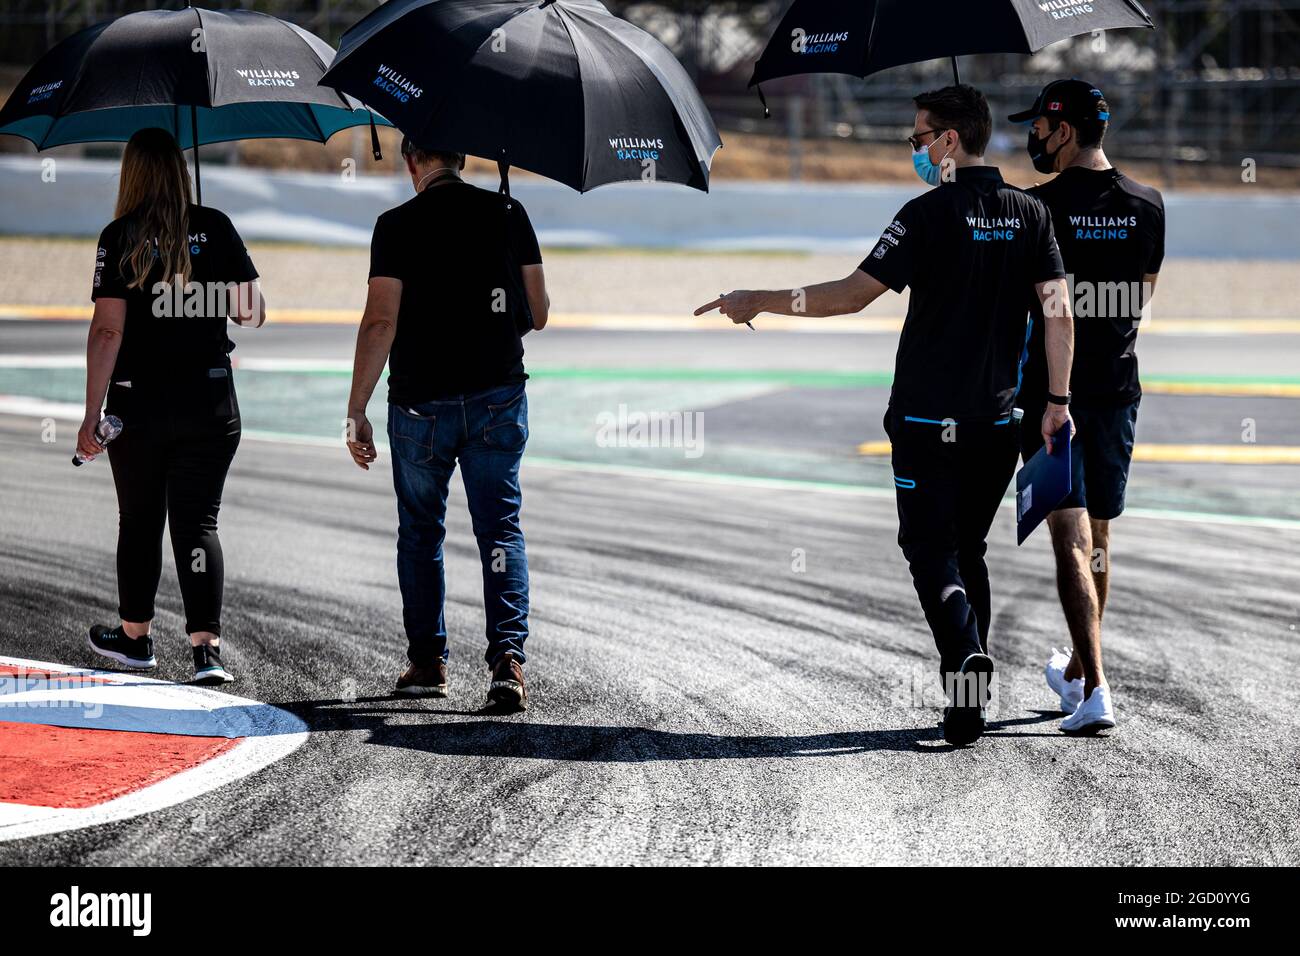 Nichola Latifi (CDN) Williams Racing geht mit dem Team auf der Rennstrecke. Großer Preis von Spanien, Donnerstag, 13. August 2020. Barcelona, Spanien. Stockfoto